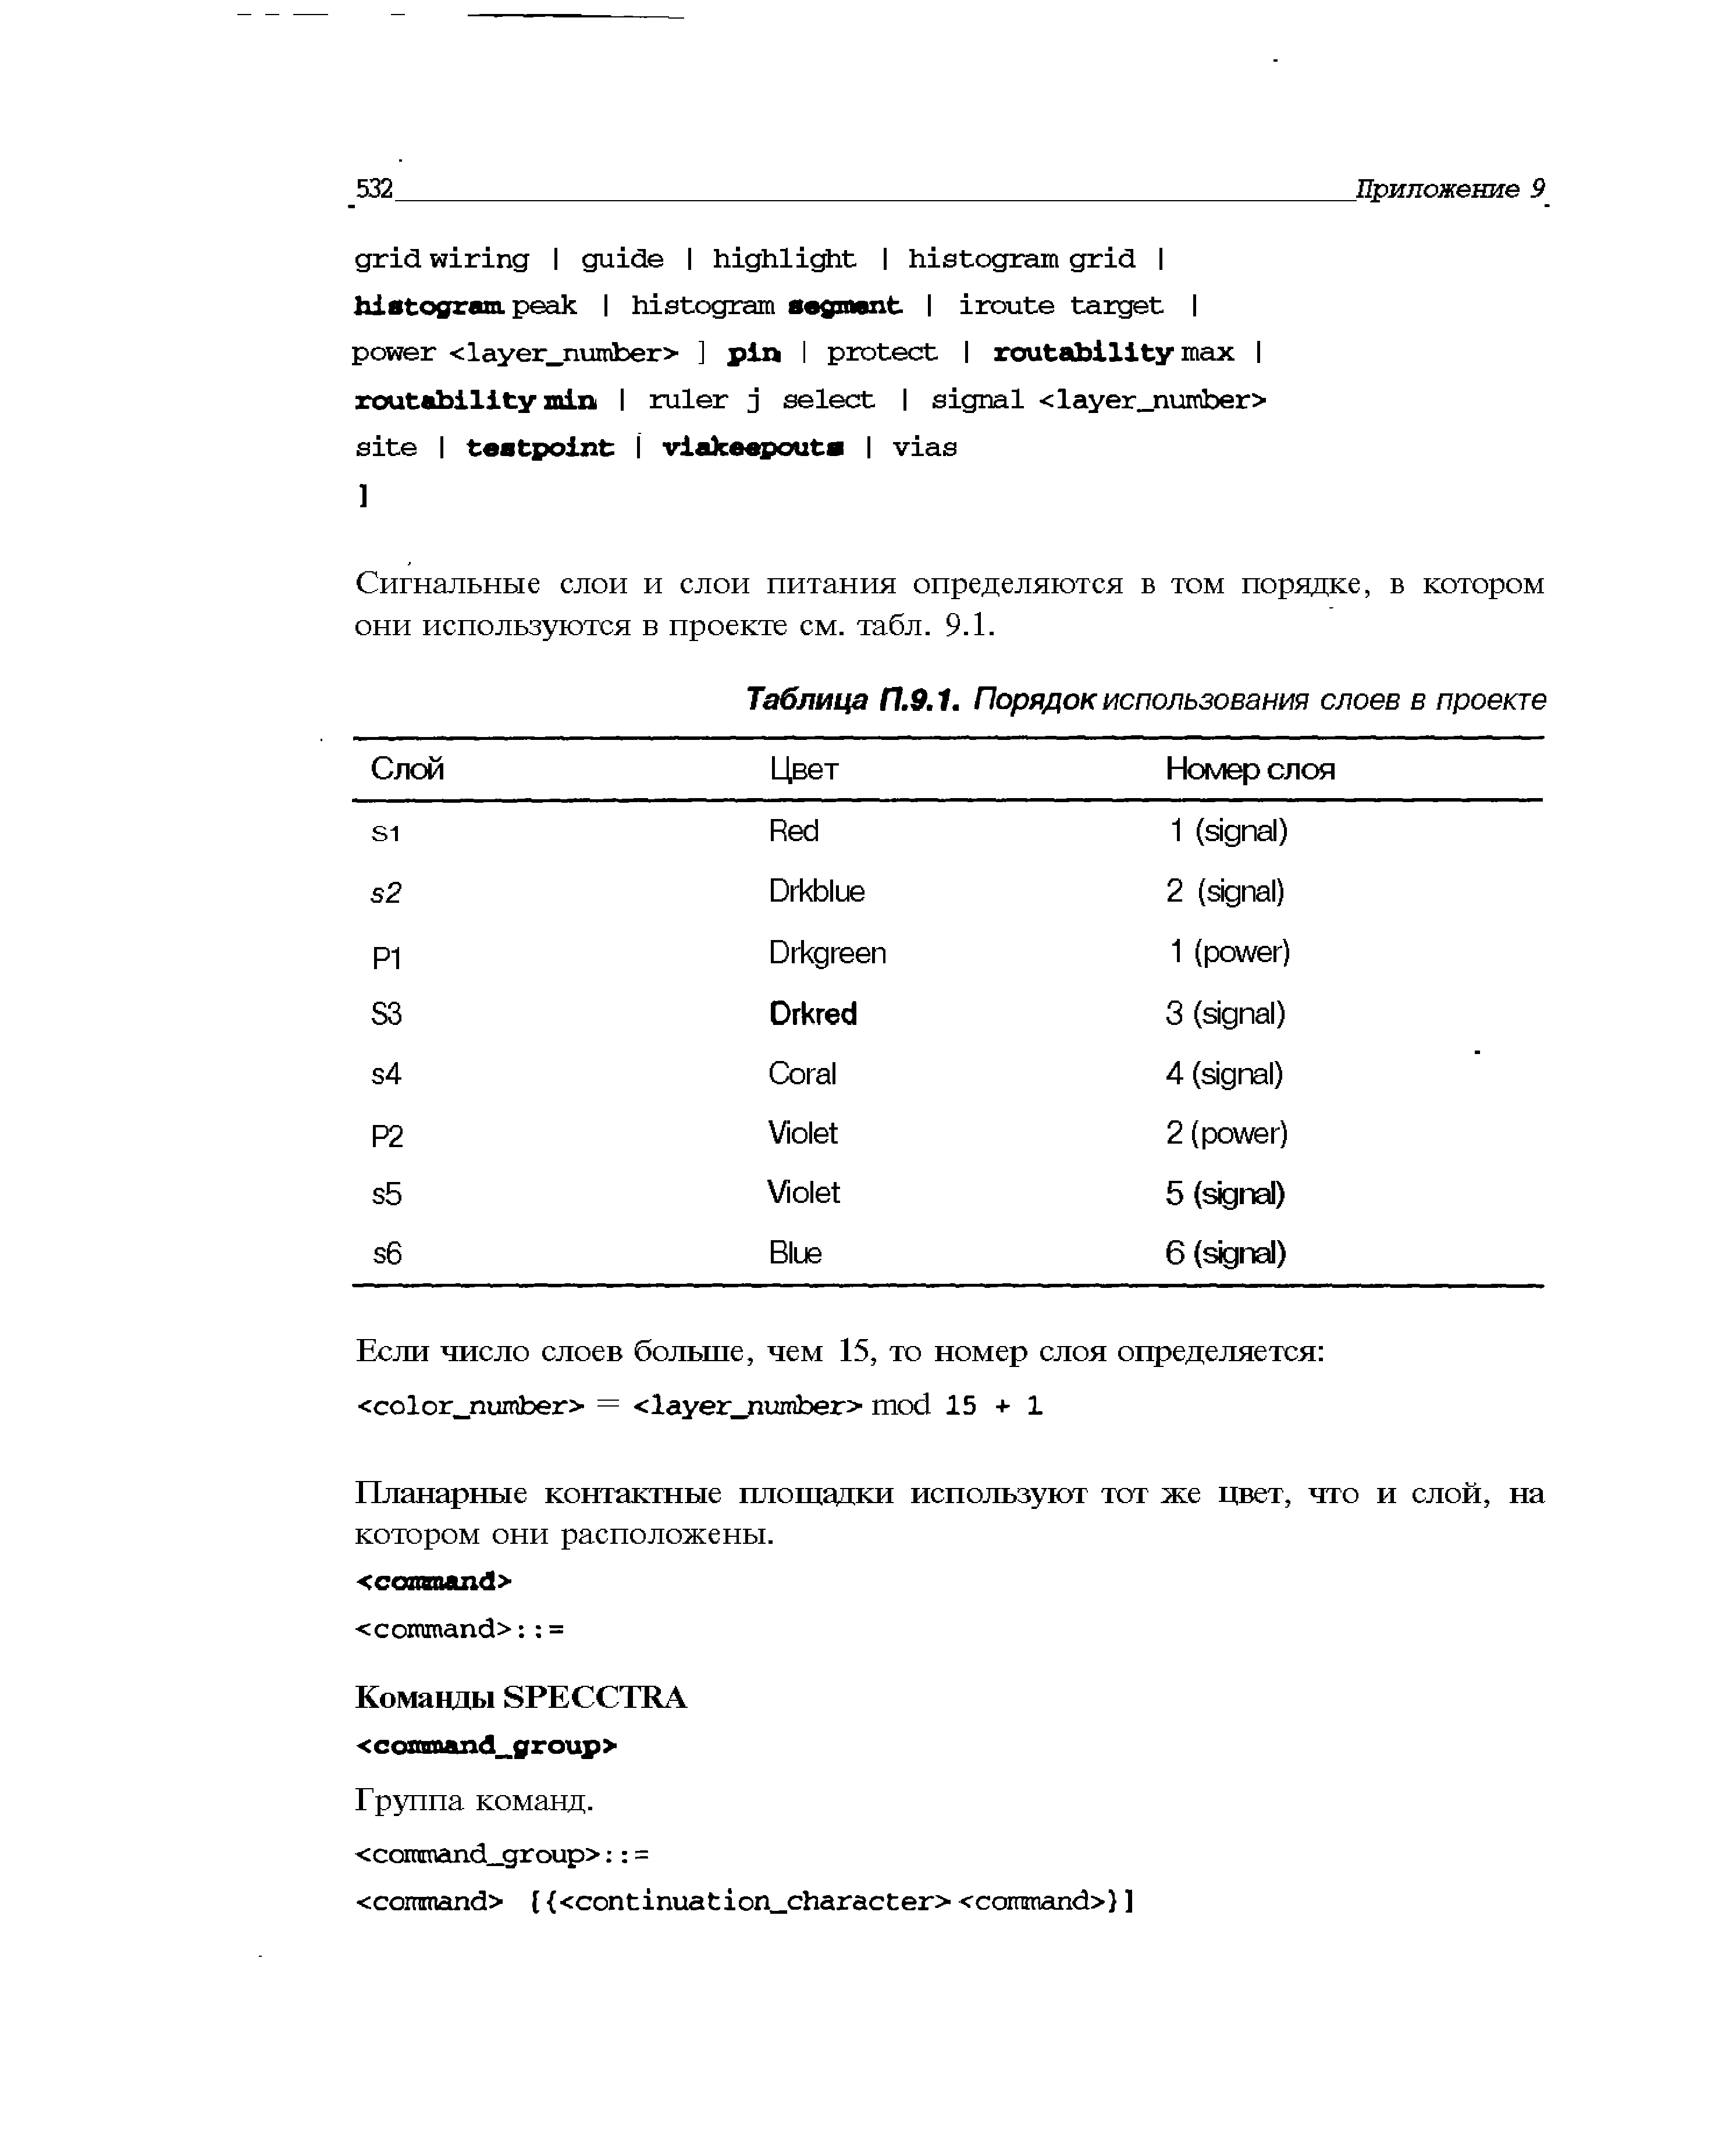 Таблица П.9.1. Порядок использования слоев в проекте
